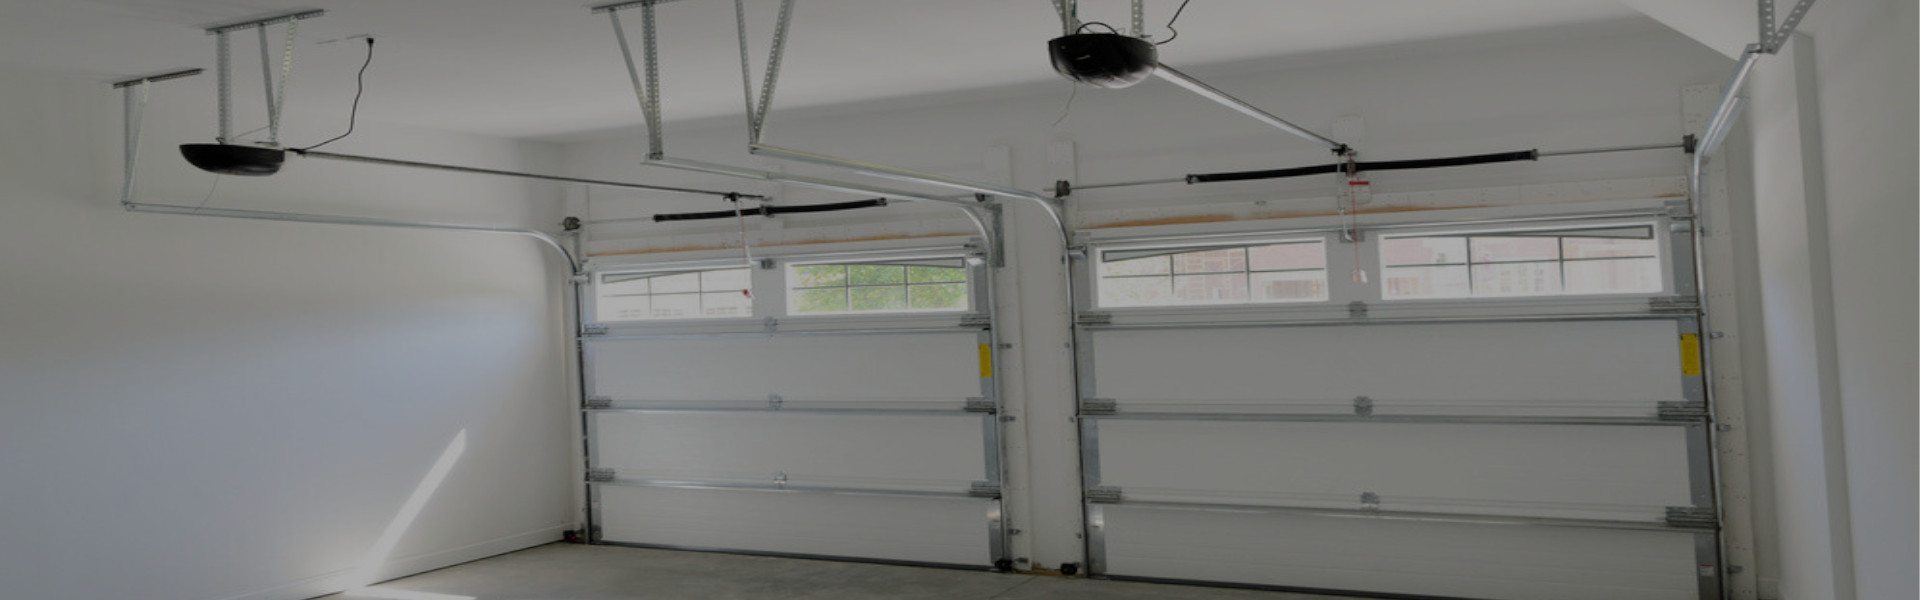 Slider Garage Door Repair, Glaziers in Harlesden, Willesden, NW10